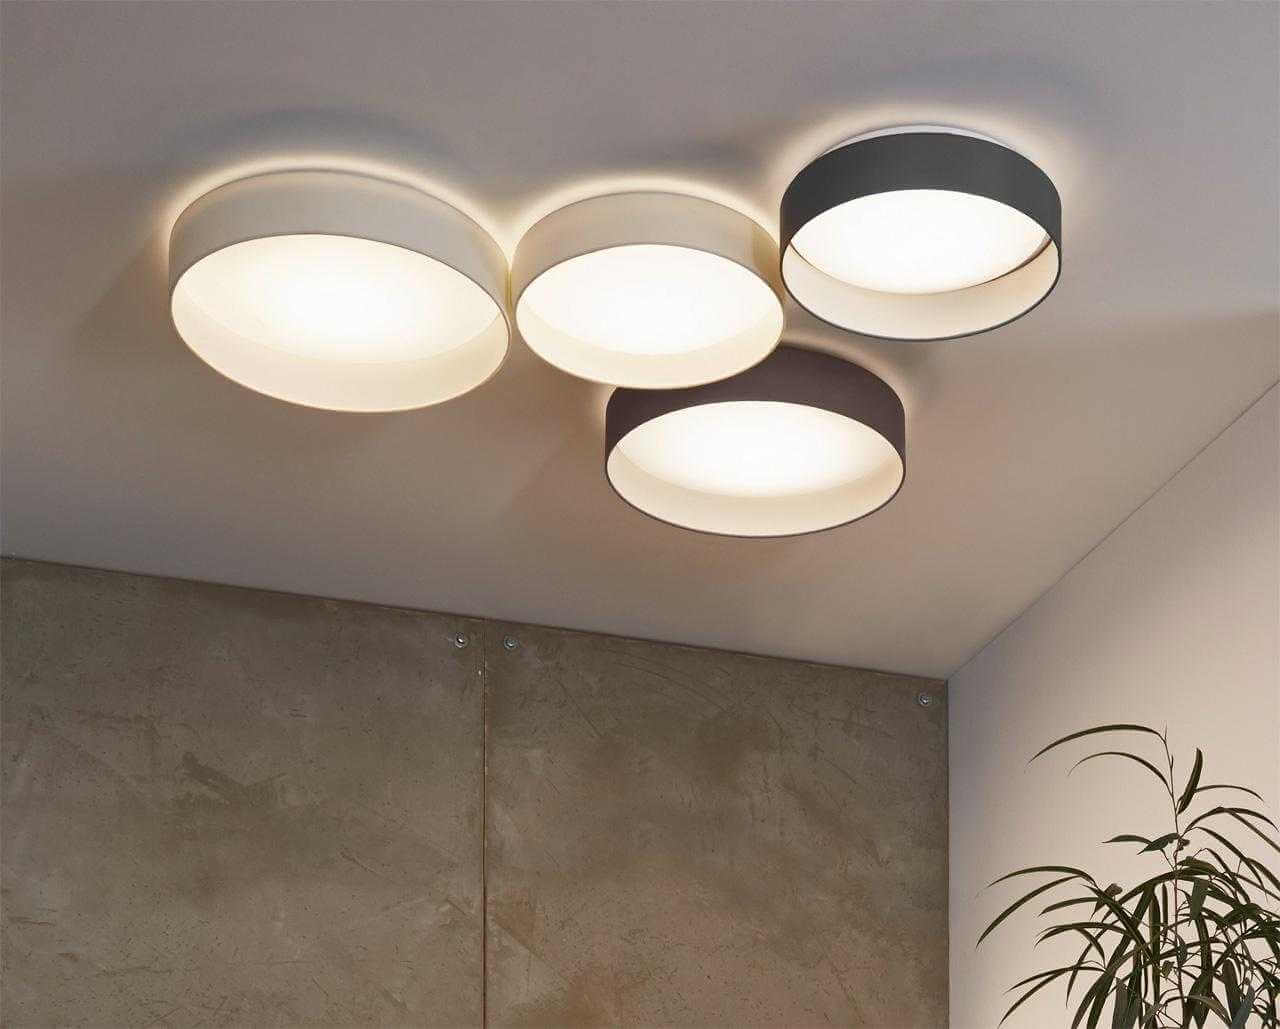 Как выбрать идеальный потолочный светильник для вашего интерьера